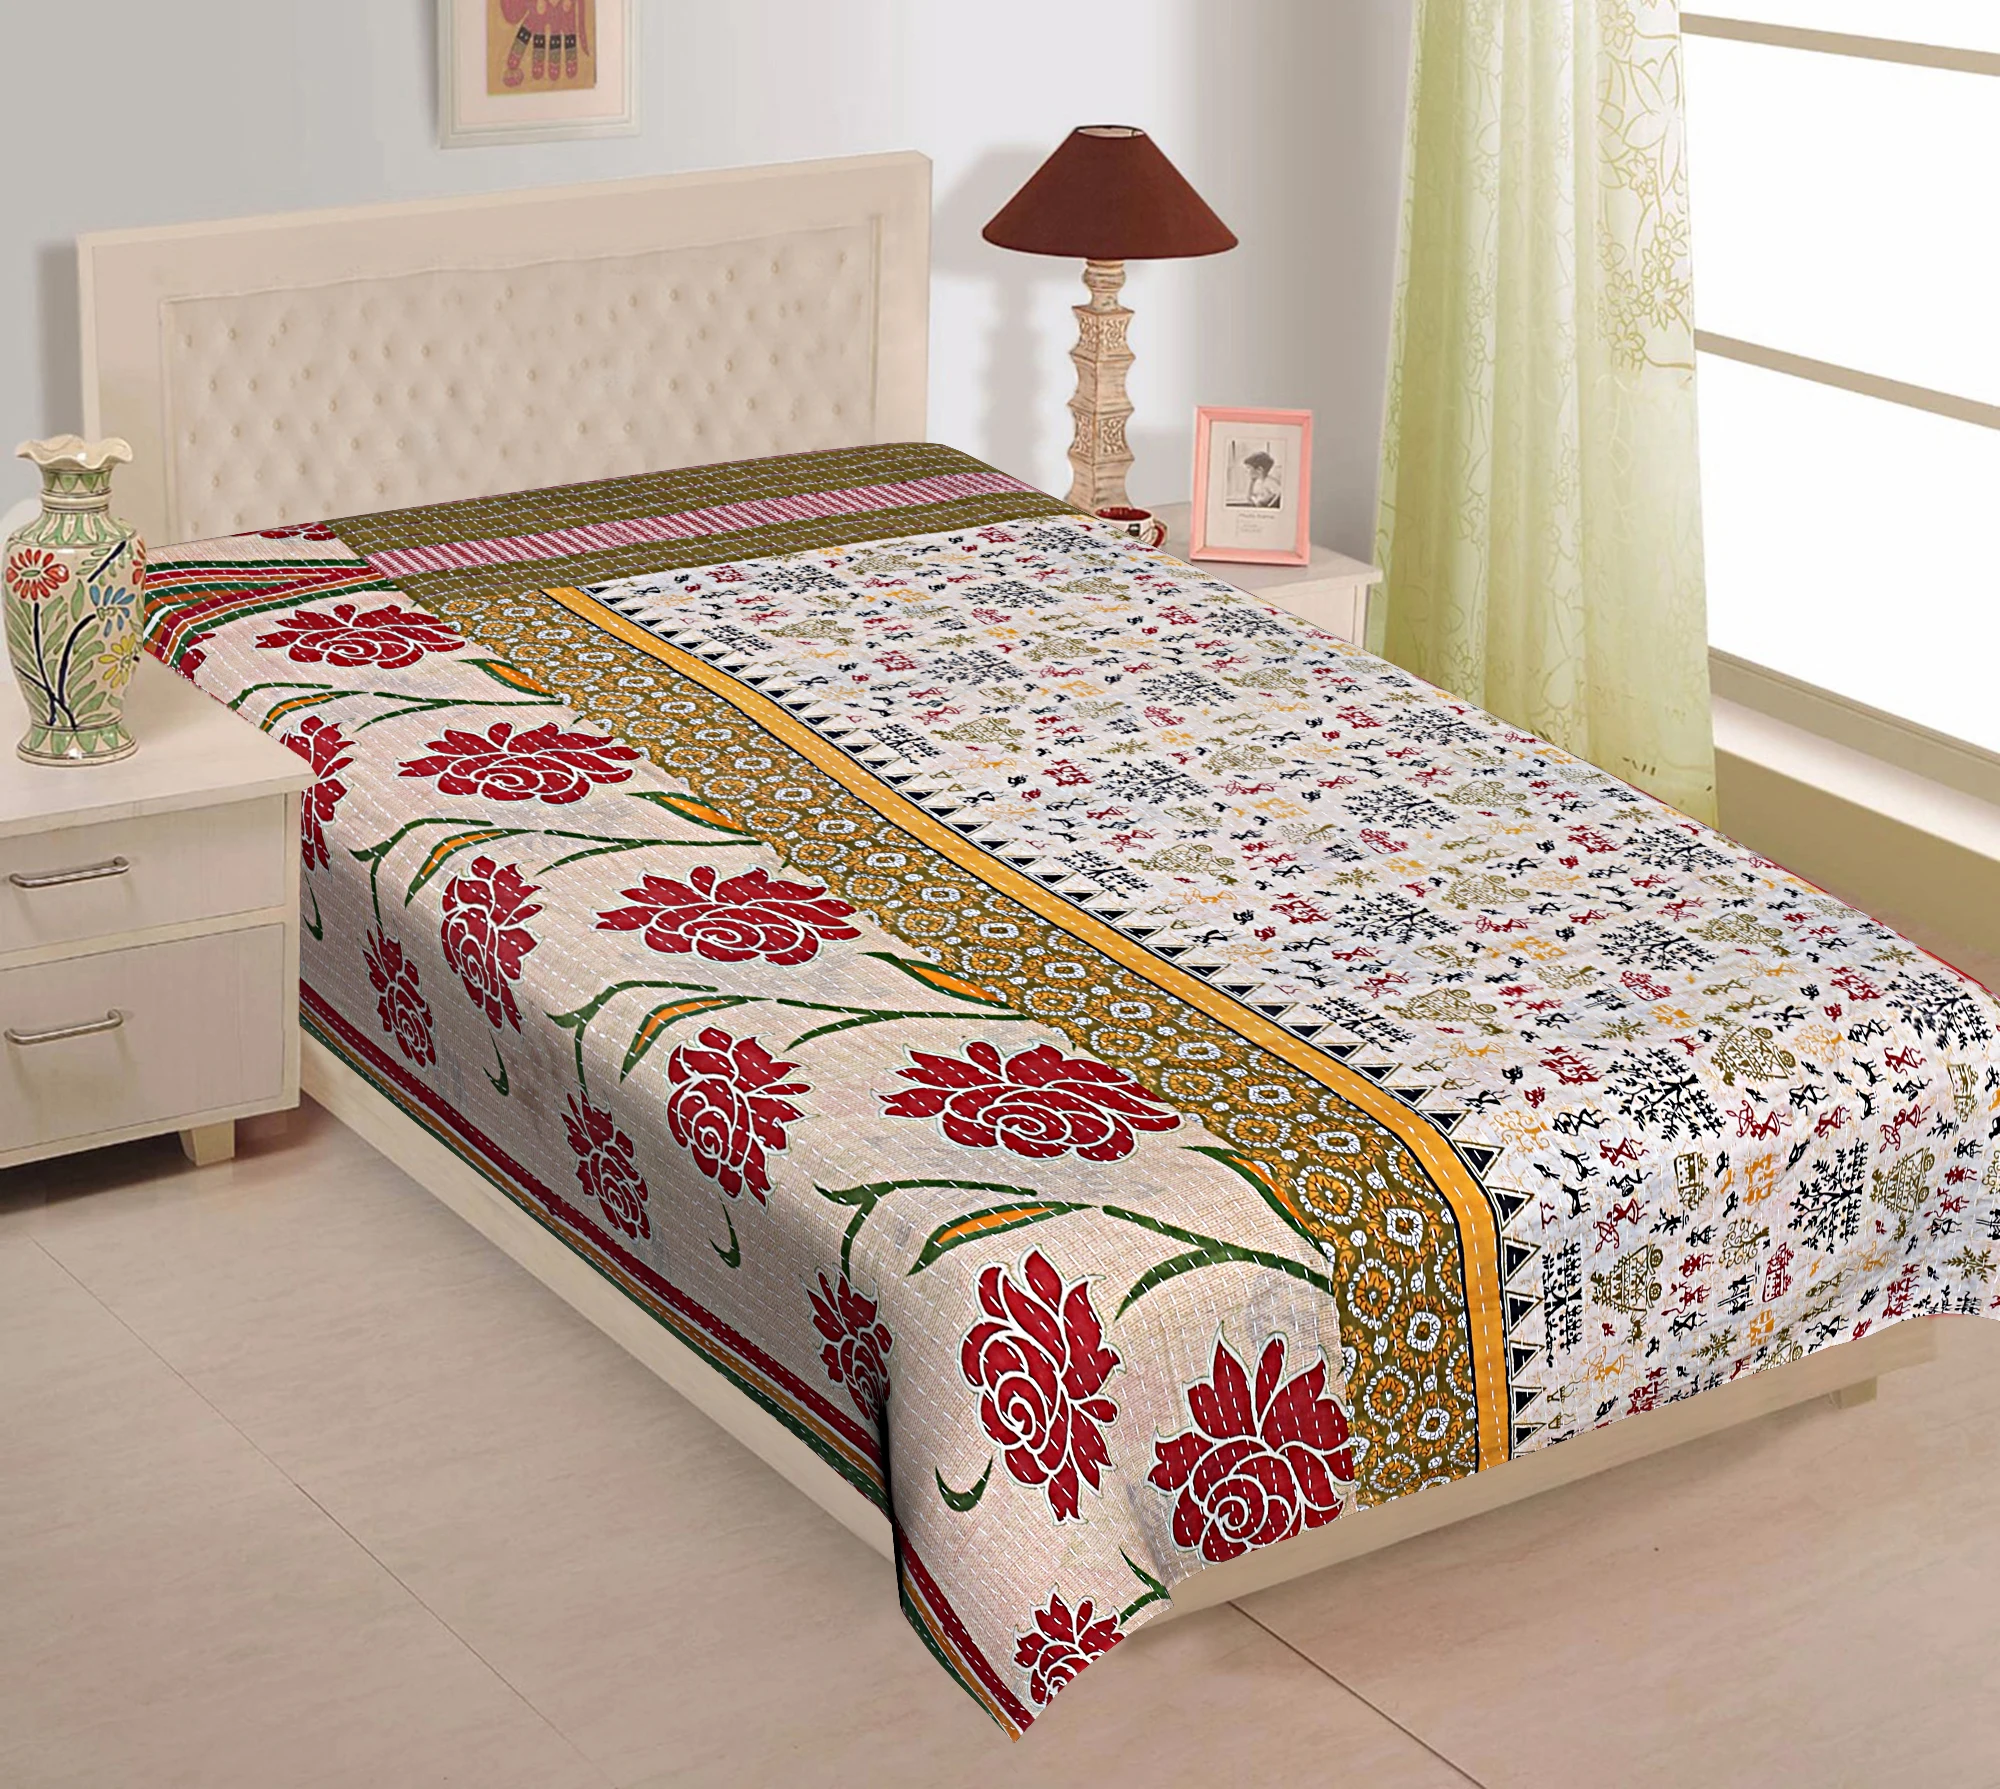 Vintage Kantha Quilt Coverlet Indian Bedding Bedspread Blanket Decor lot Throw 